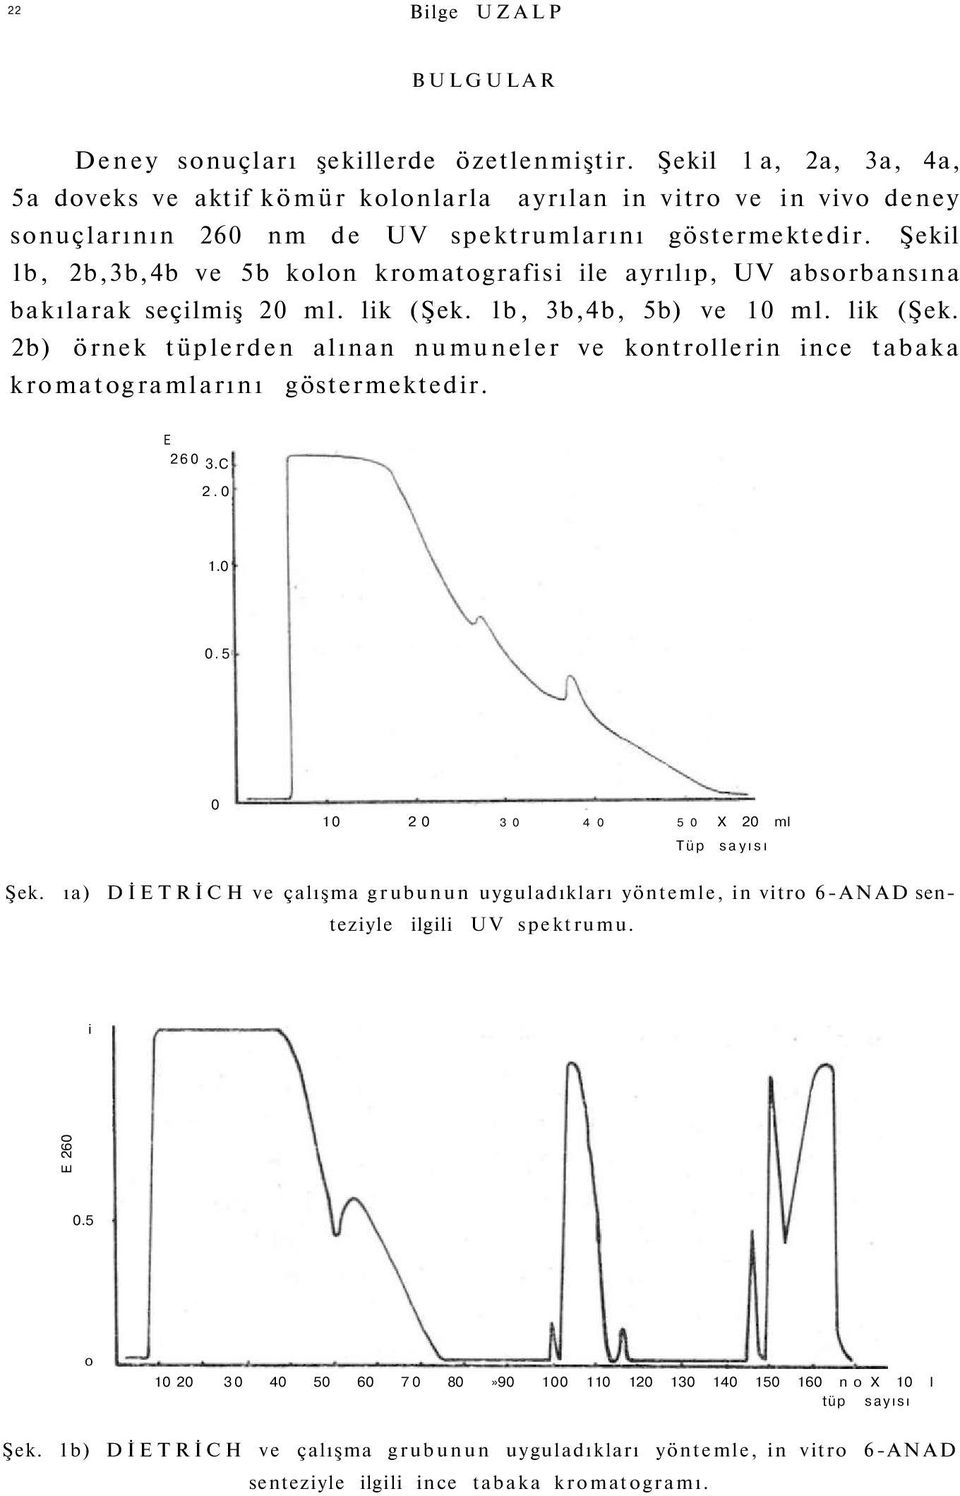 Şekil lb, 2b,3b,4b ve 5b kolon kromatografisi ile ayrılıp, UV absorbansına bakılarak seçilmiş 20 ml. lik (Şek.